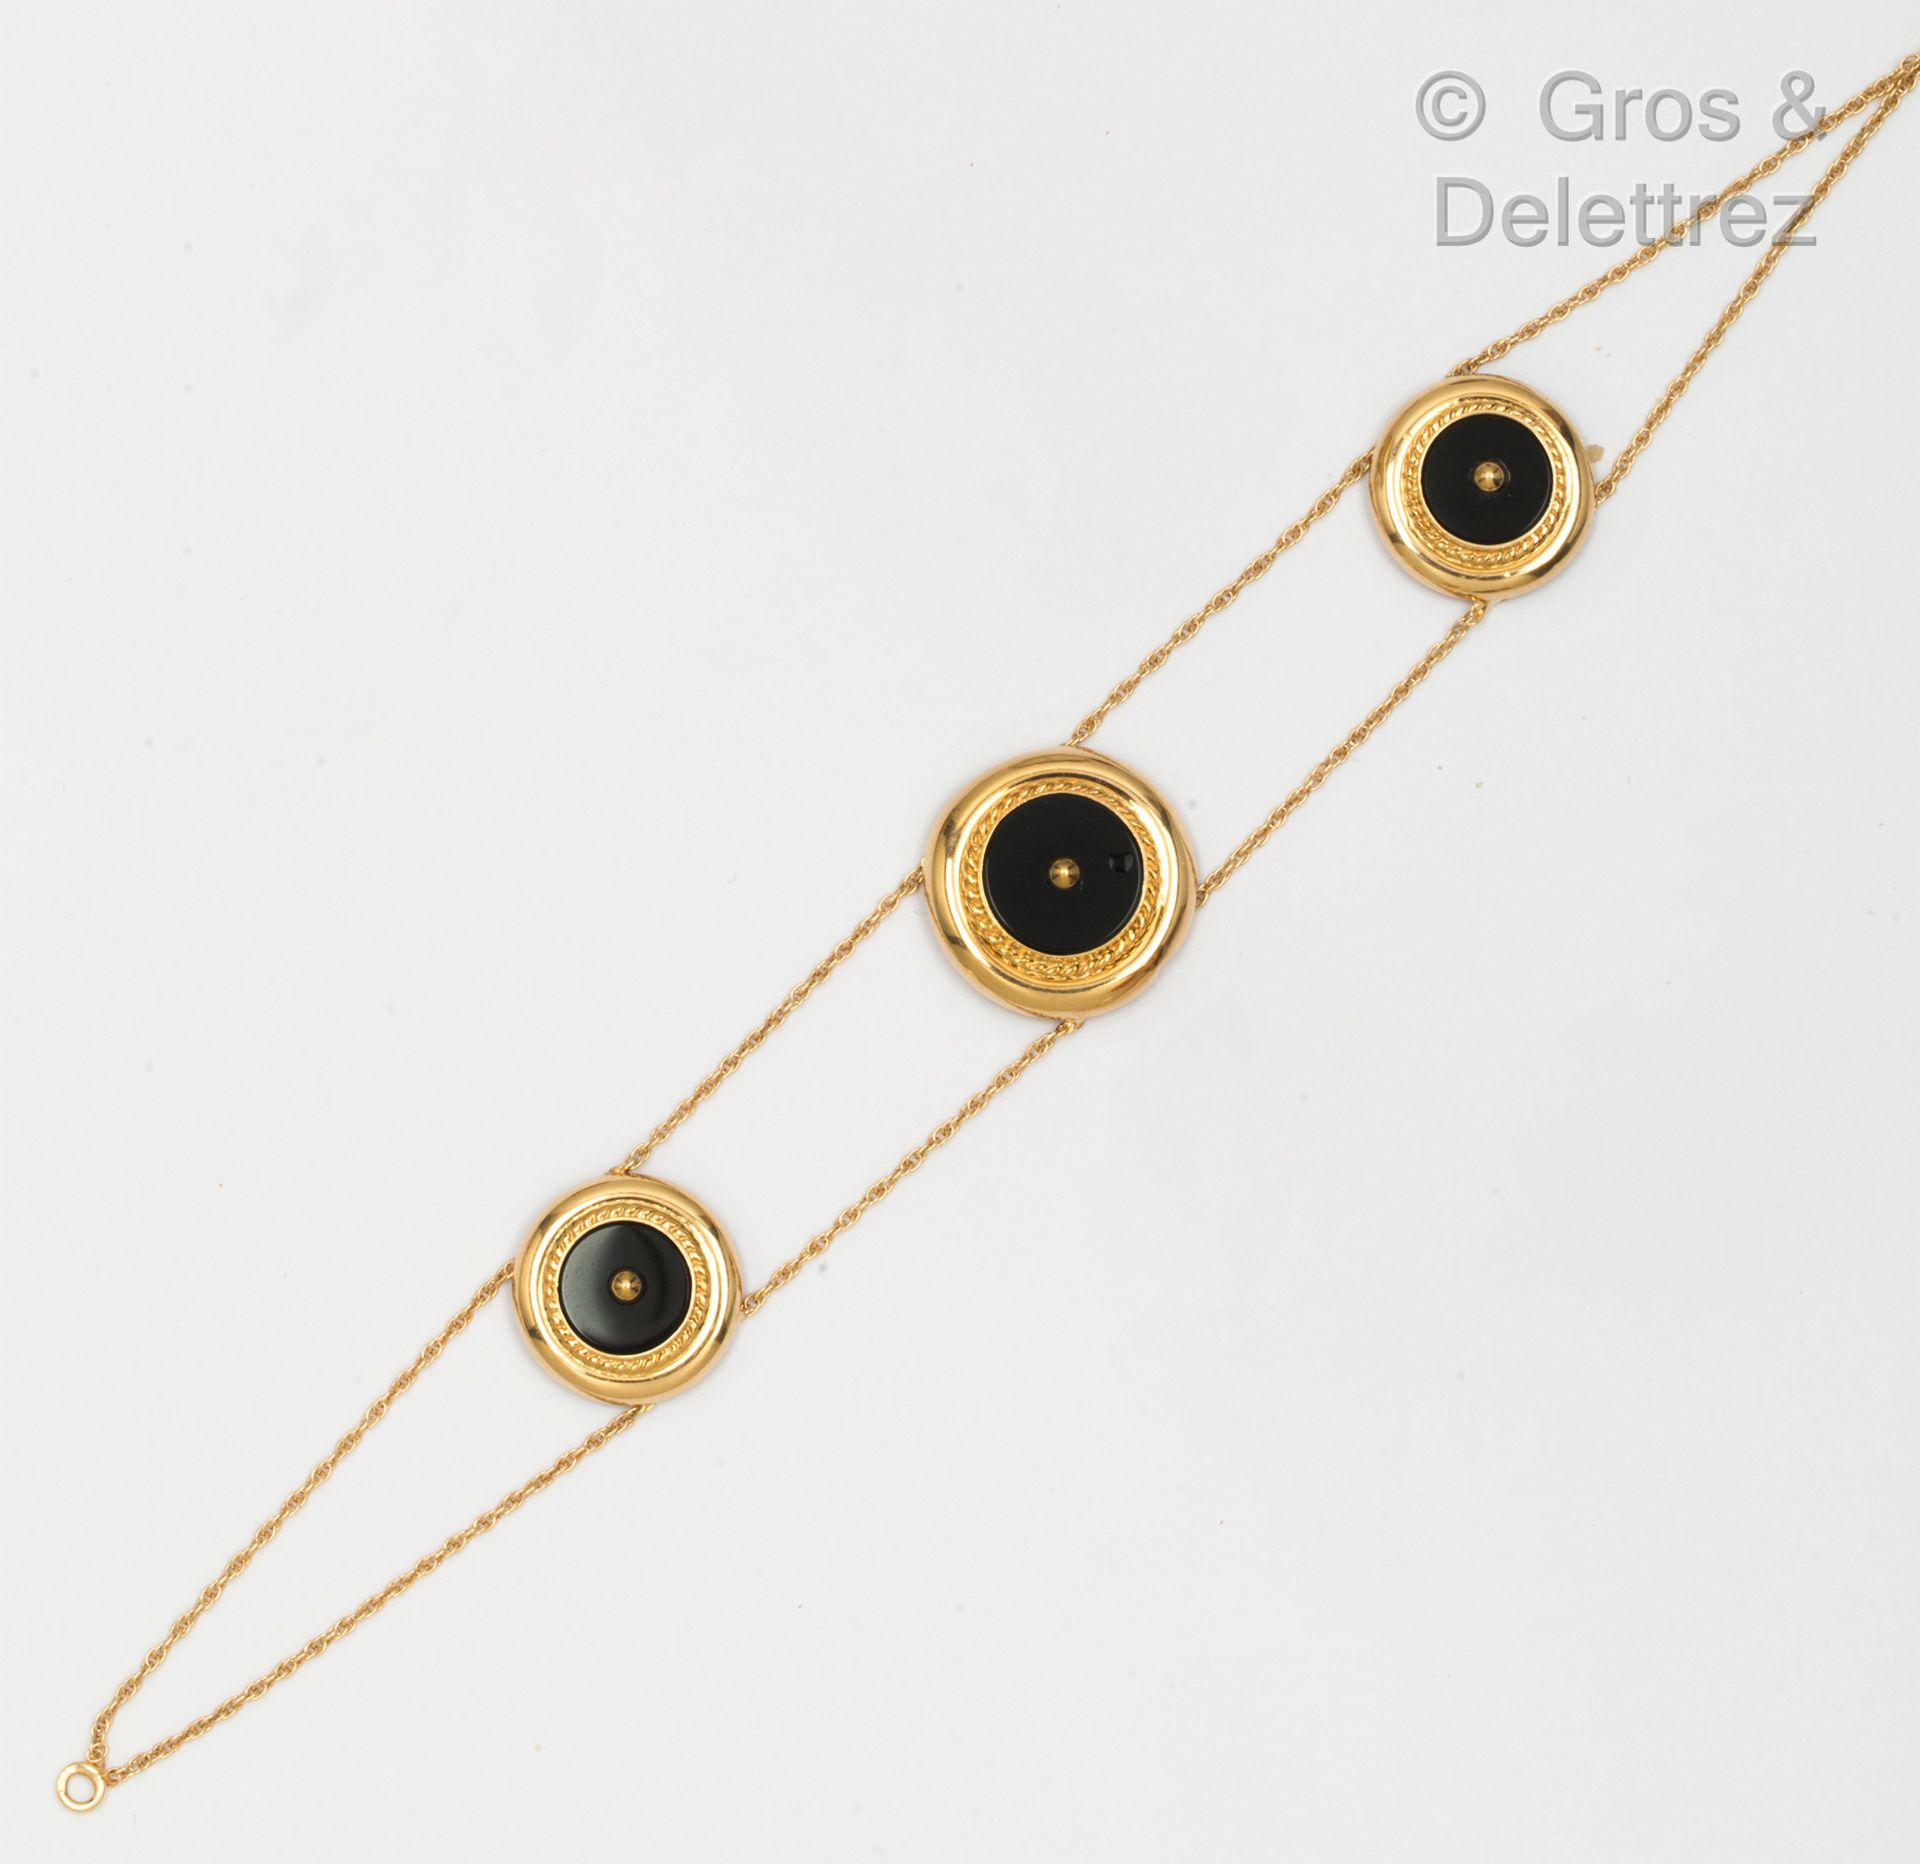 Null 黄金手镯，由两条链子组成，链子上的圆形图案在扭曲的框架中镶嵌着黑玛瑙板，上面有一颗金珍珠。长度：18.5厘米。毛重：6.5克